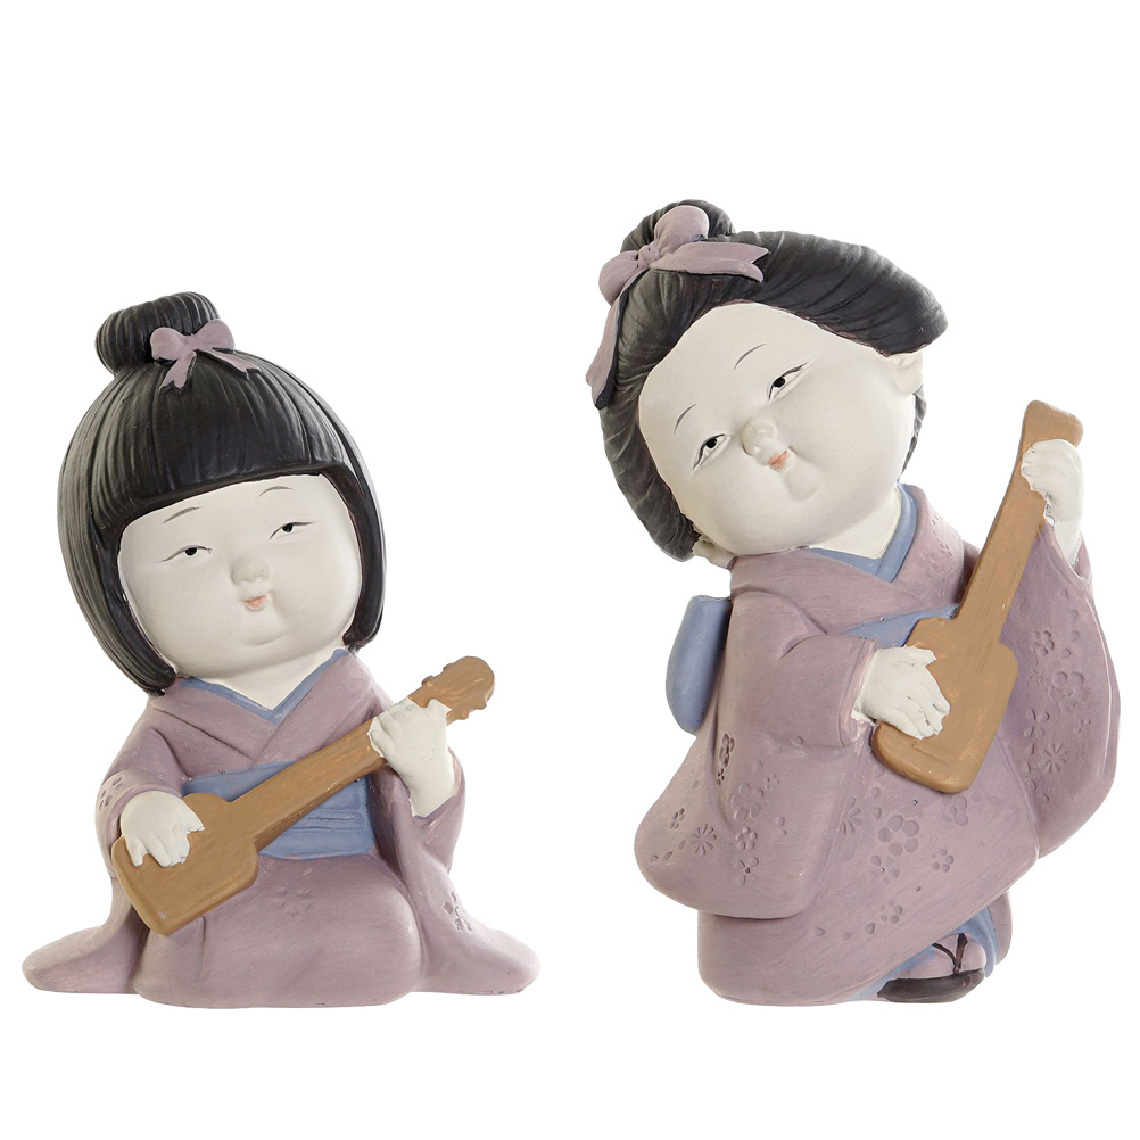 Items France - Set de 2 figurines Geisha - Petite déco d'exterieur